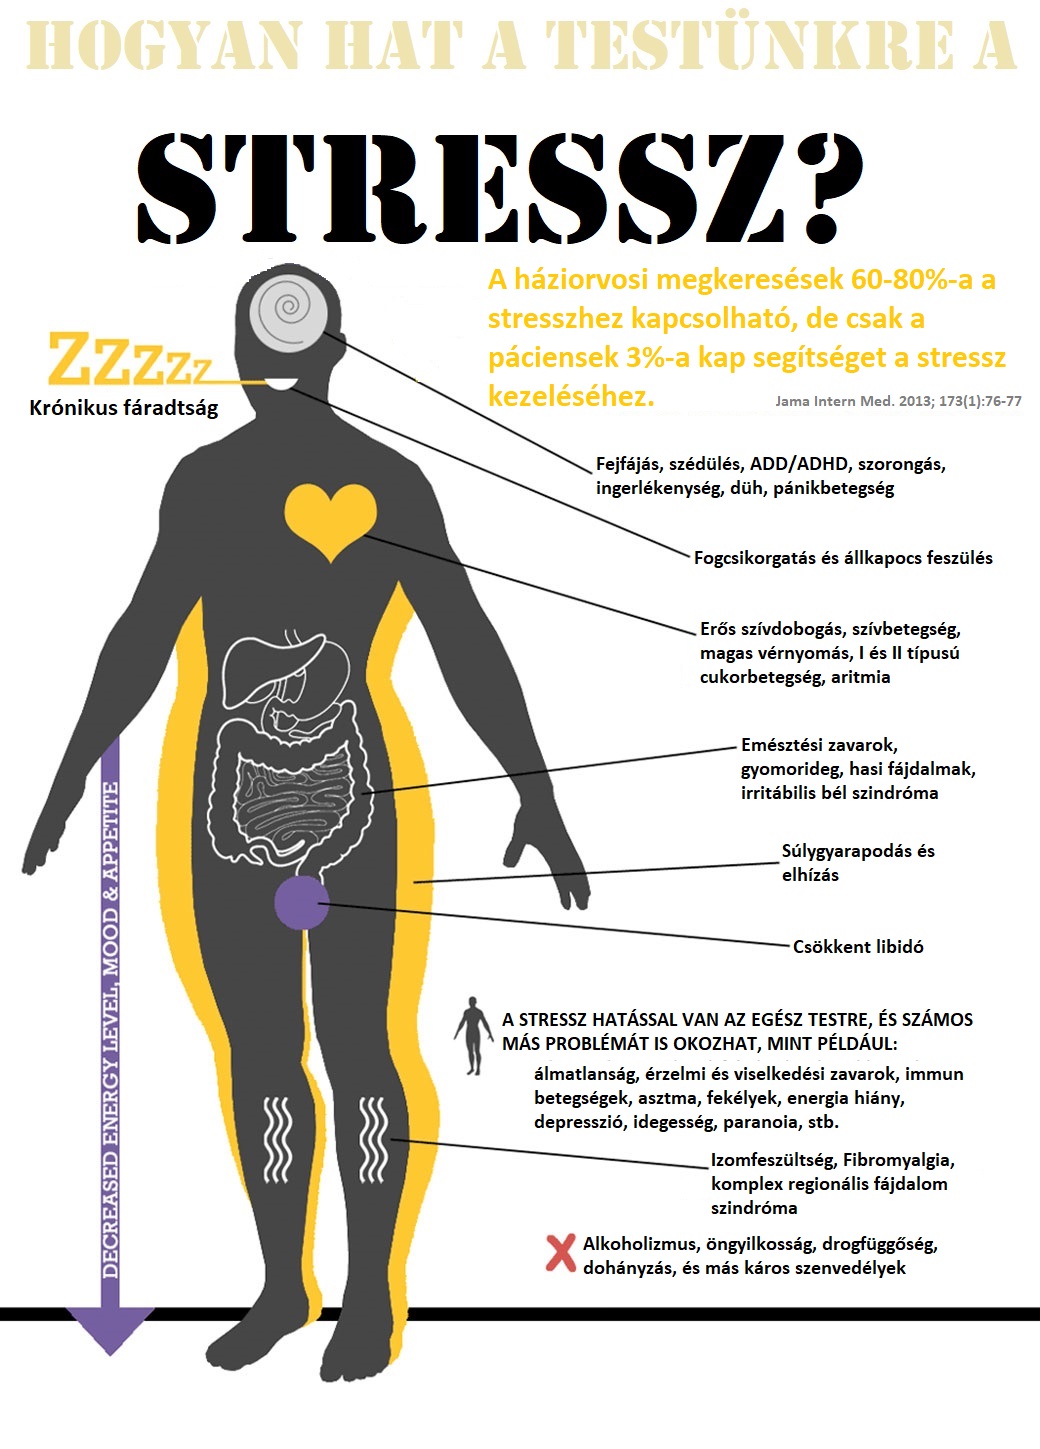 a stressz magas vérnyomásának hatása magas vérnyomás fok